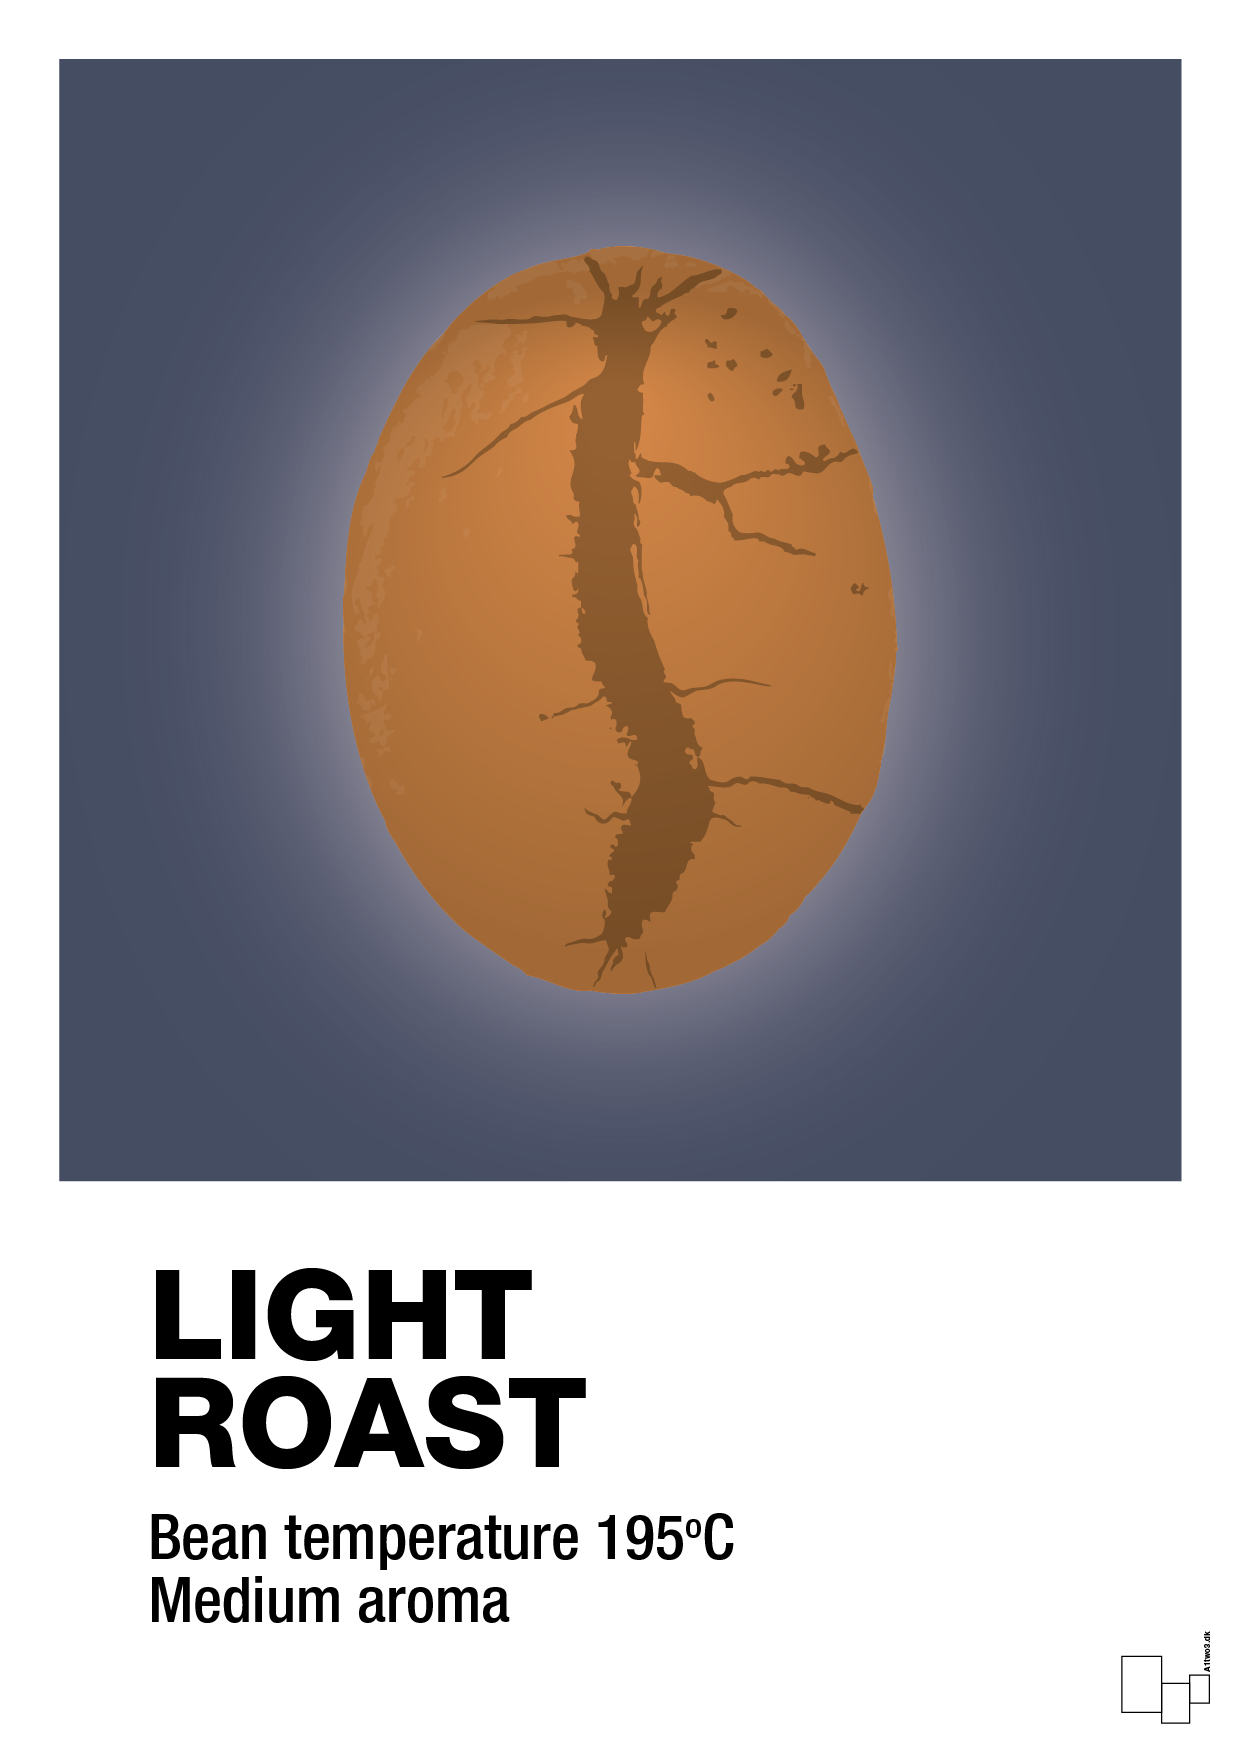 light roast - Plakat med Mad & Drikke i Petrol